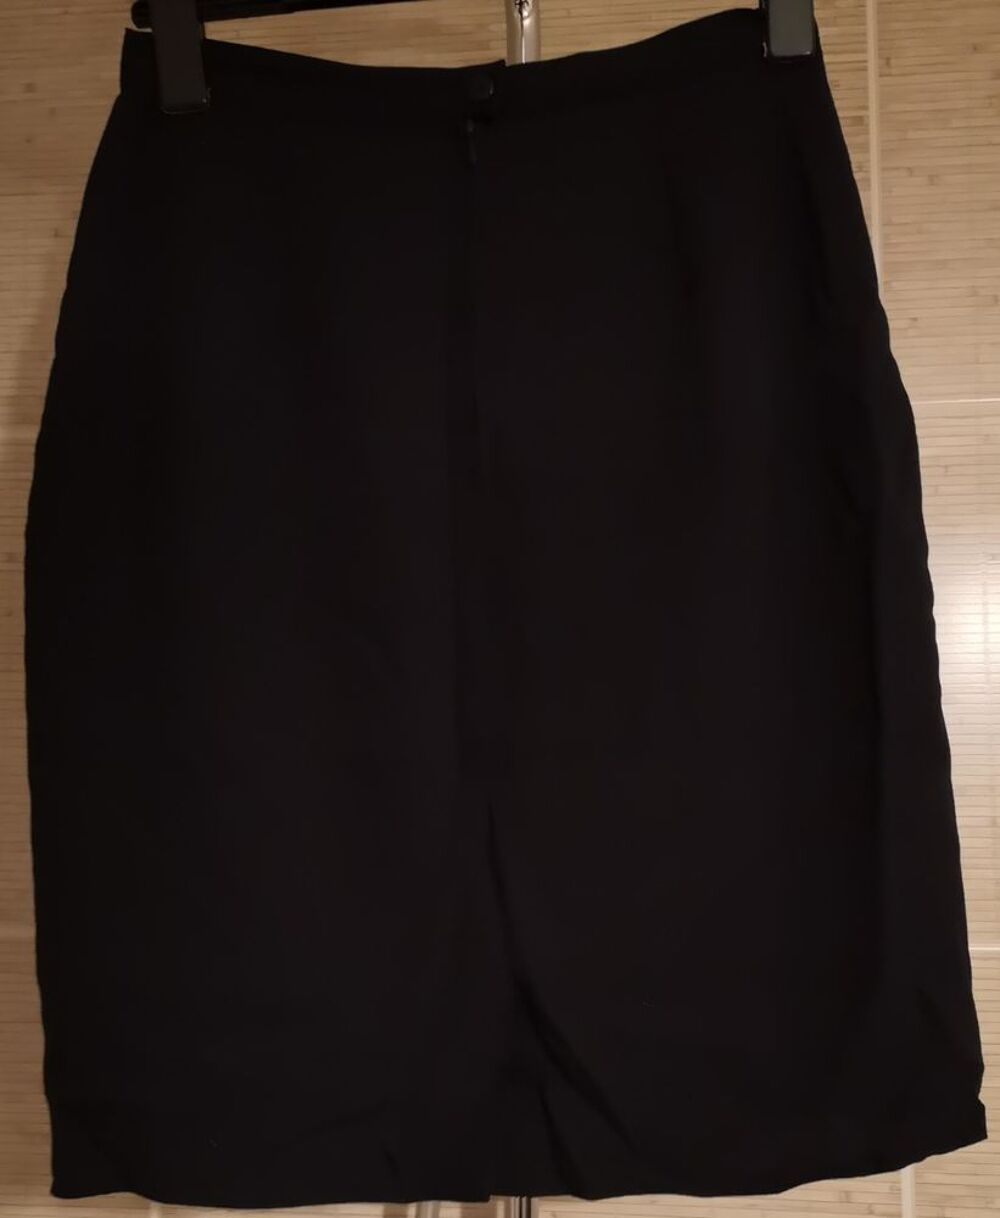 Jupe droite noire courte Taille 40
Vtements